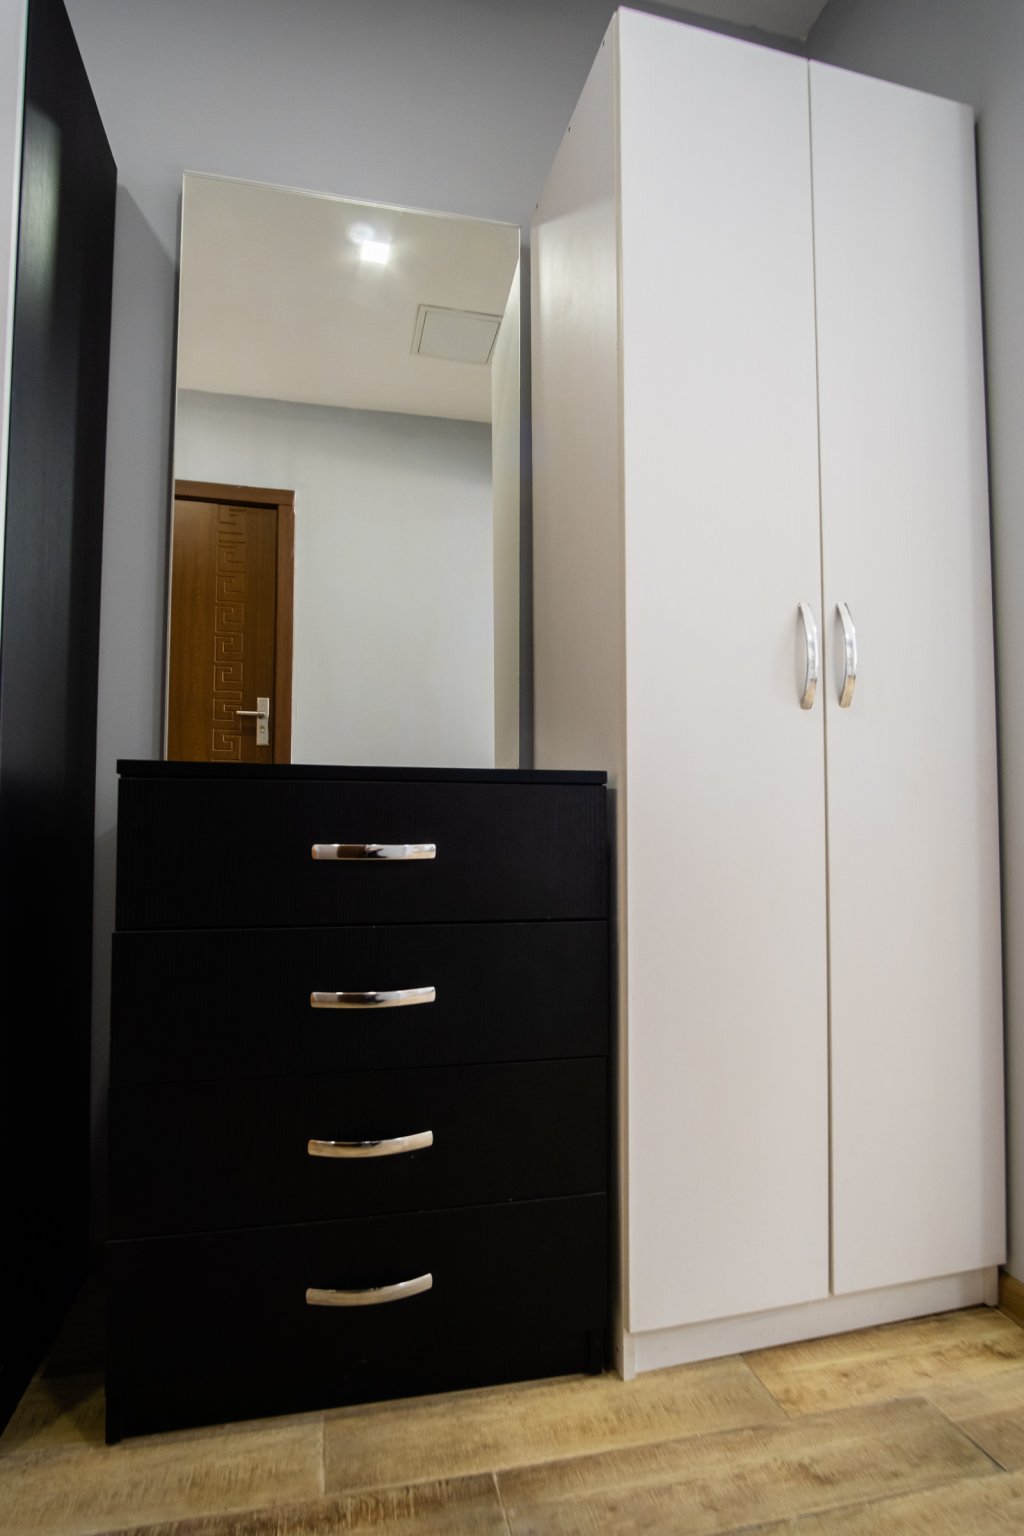 1-bedroom apartment in Porta Batumi complex id-1058 -  rent an apartment in Batumi